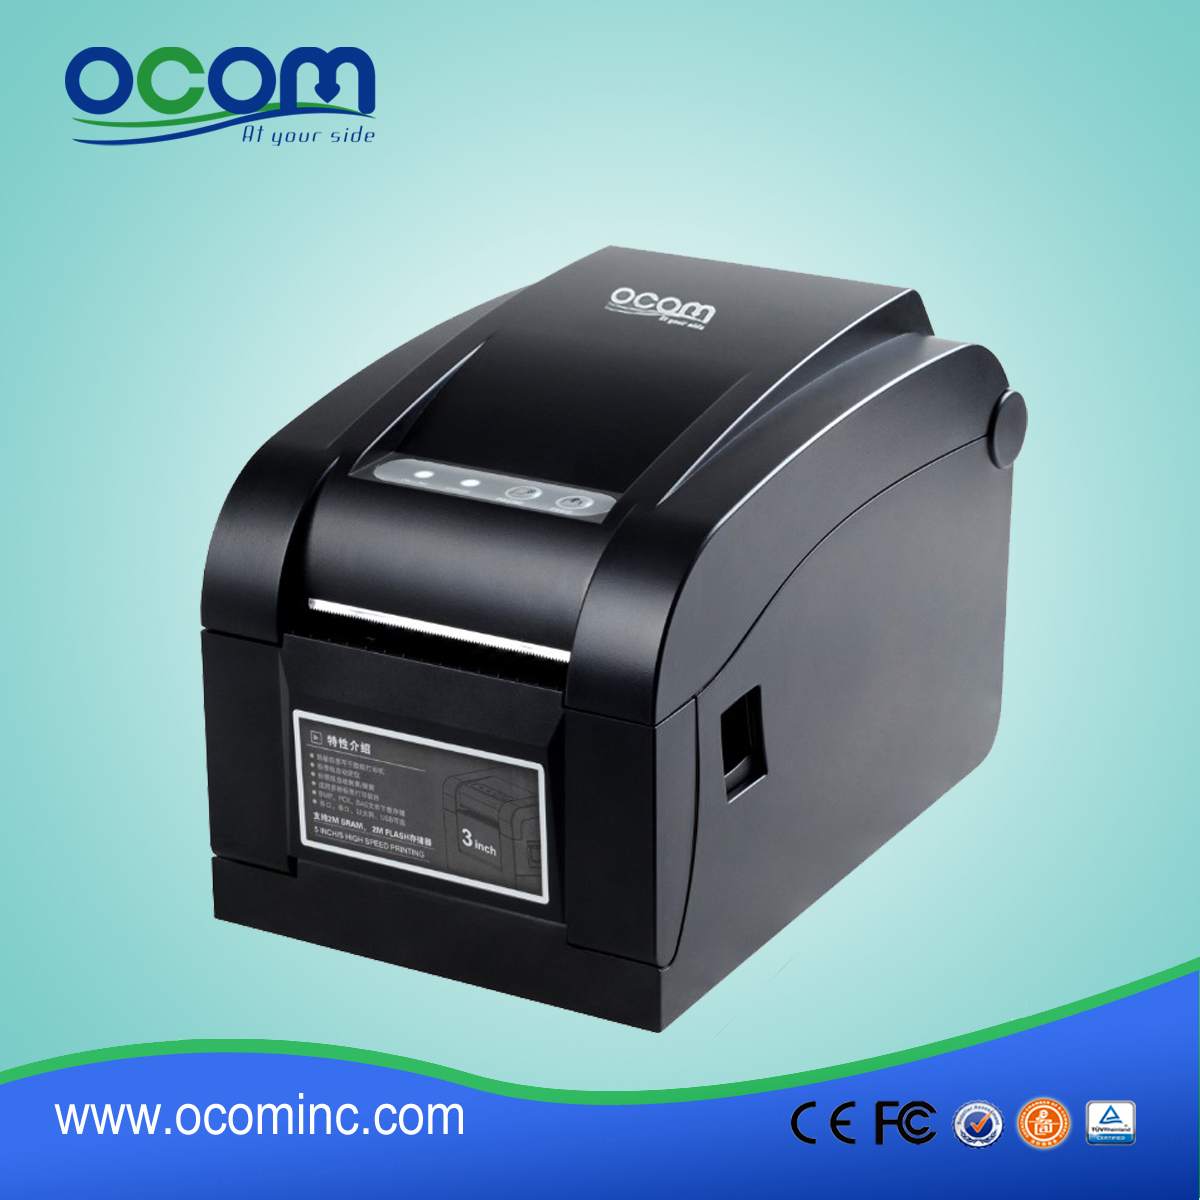 OCBP-005 Produttore di stampanti per etichette con stampanti termiche di posizione USB